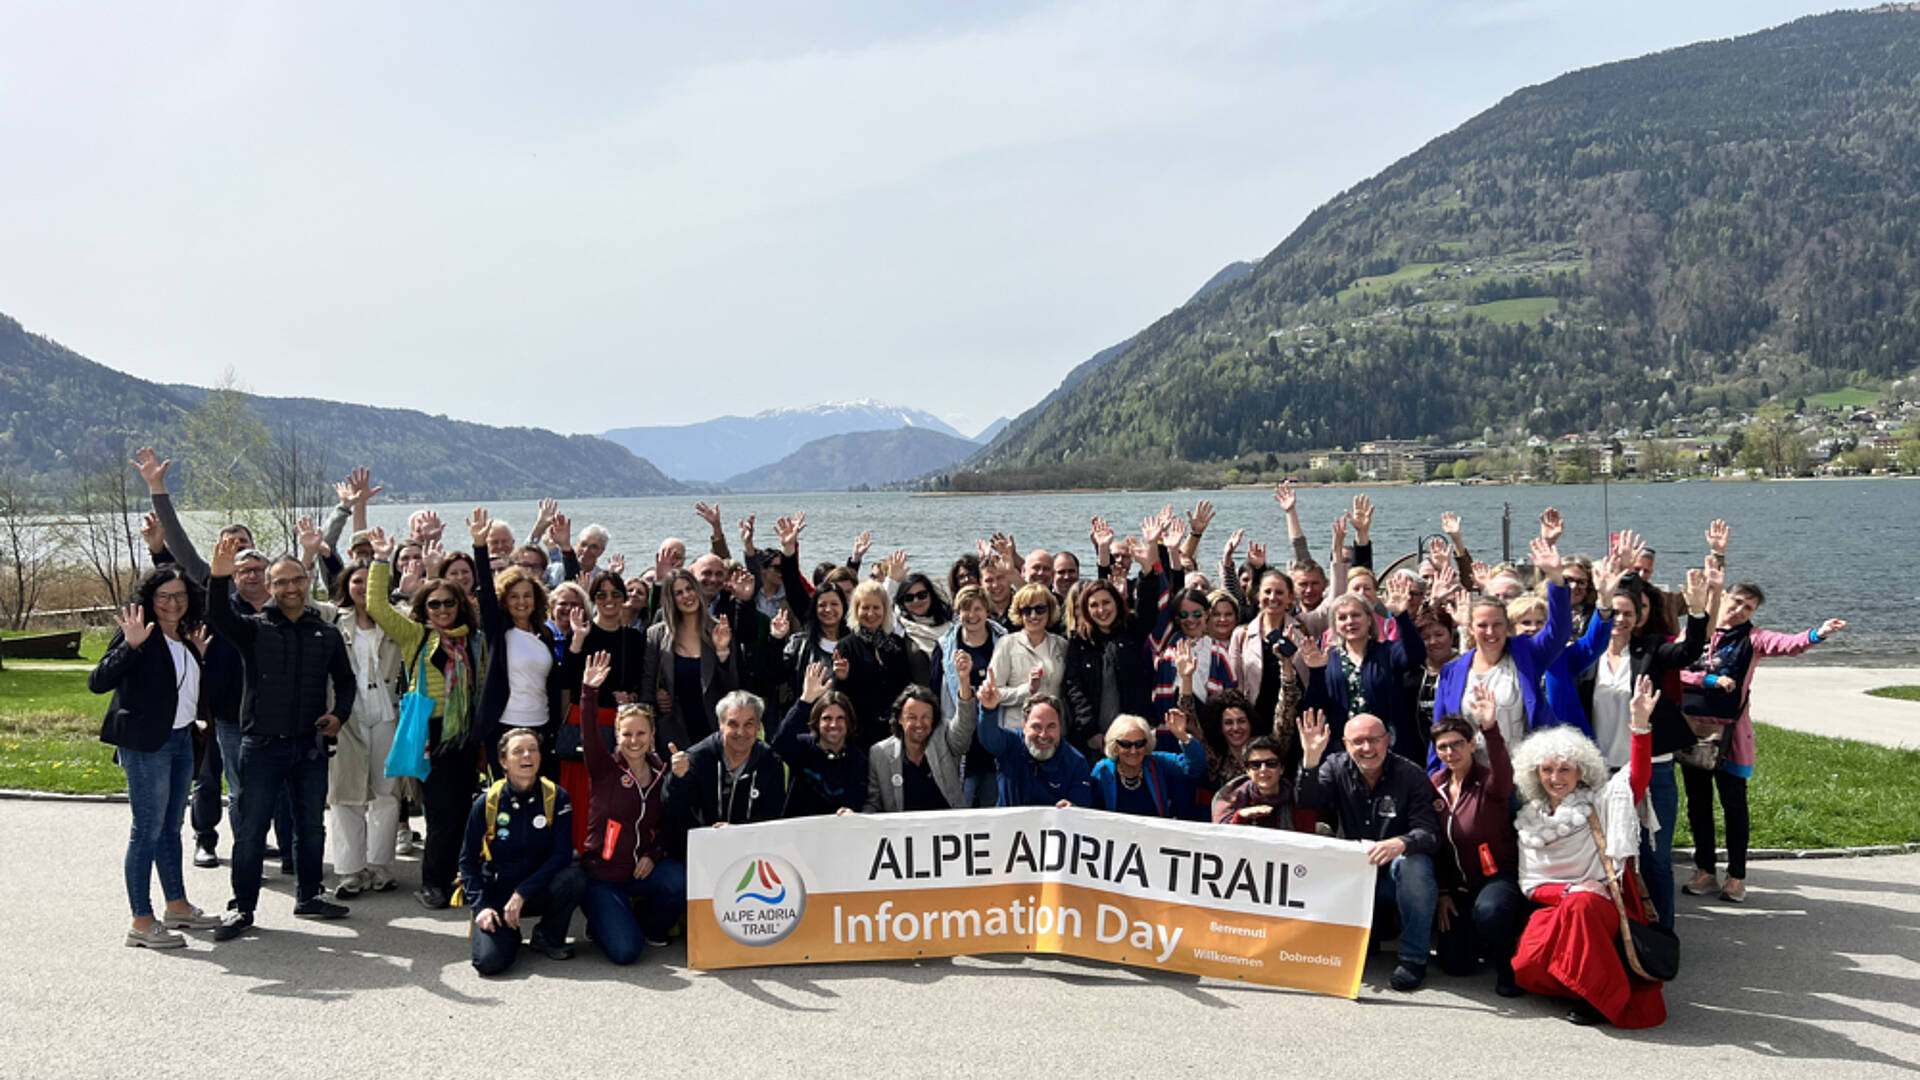 Alpe-Adria-Trail Infotag